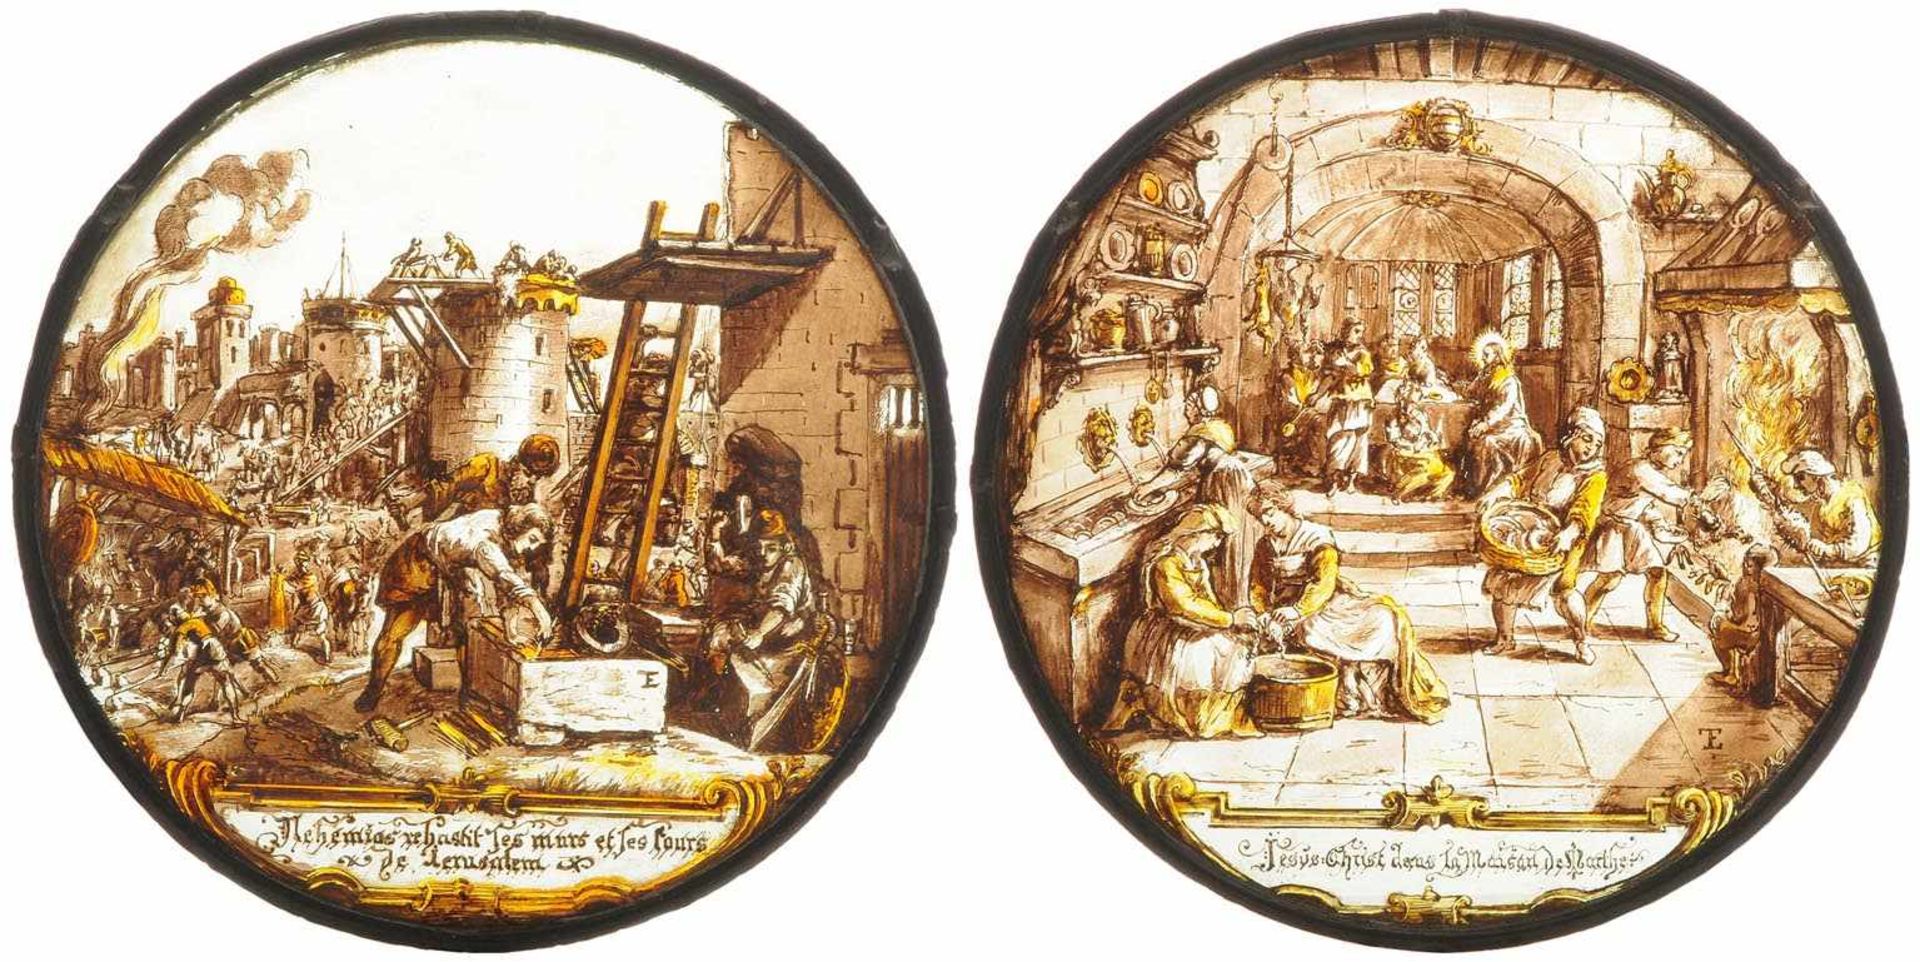 1 Paar Glasgemälde Frankreich, 19.Jh., in der Art des 17.Jhs. Rundscheiben. Glas geätzt, bemalt in